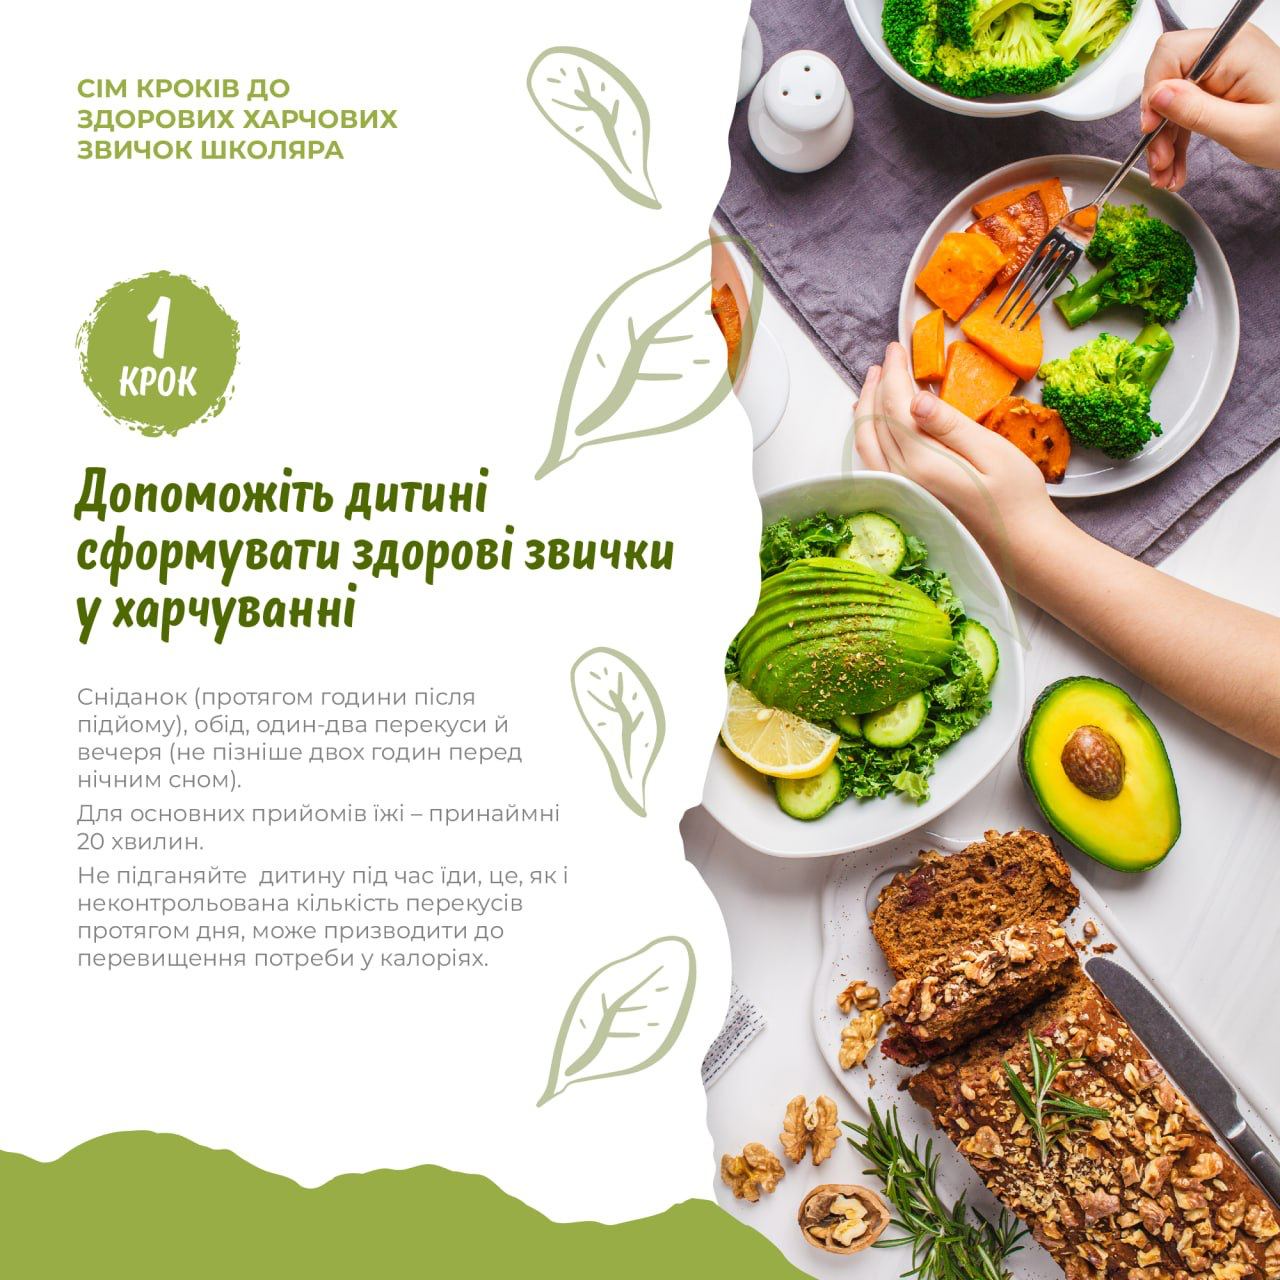 На зображенні різноманітні салати та запечені овочі солодкий рулет, в центрі напис: Крок 1 Допоможіть дитині сформувати здорові звички у харчуванні